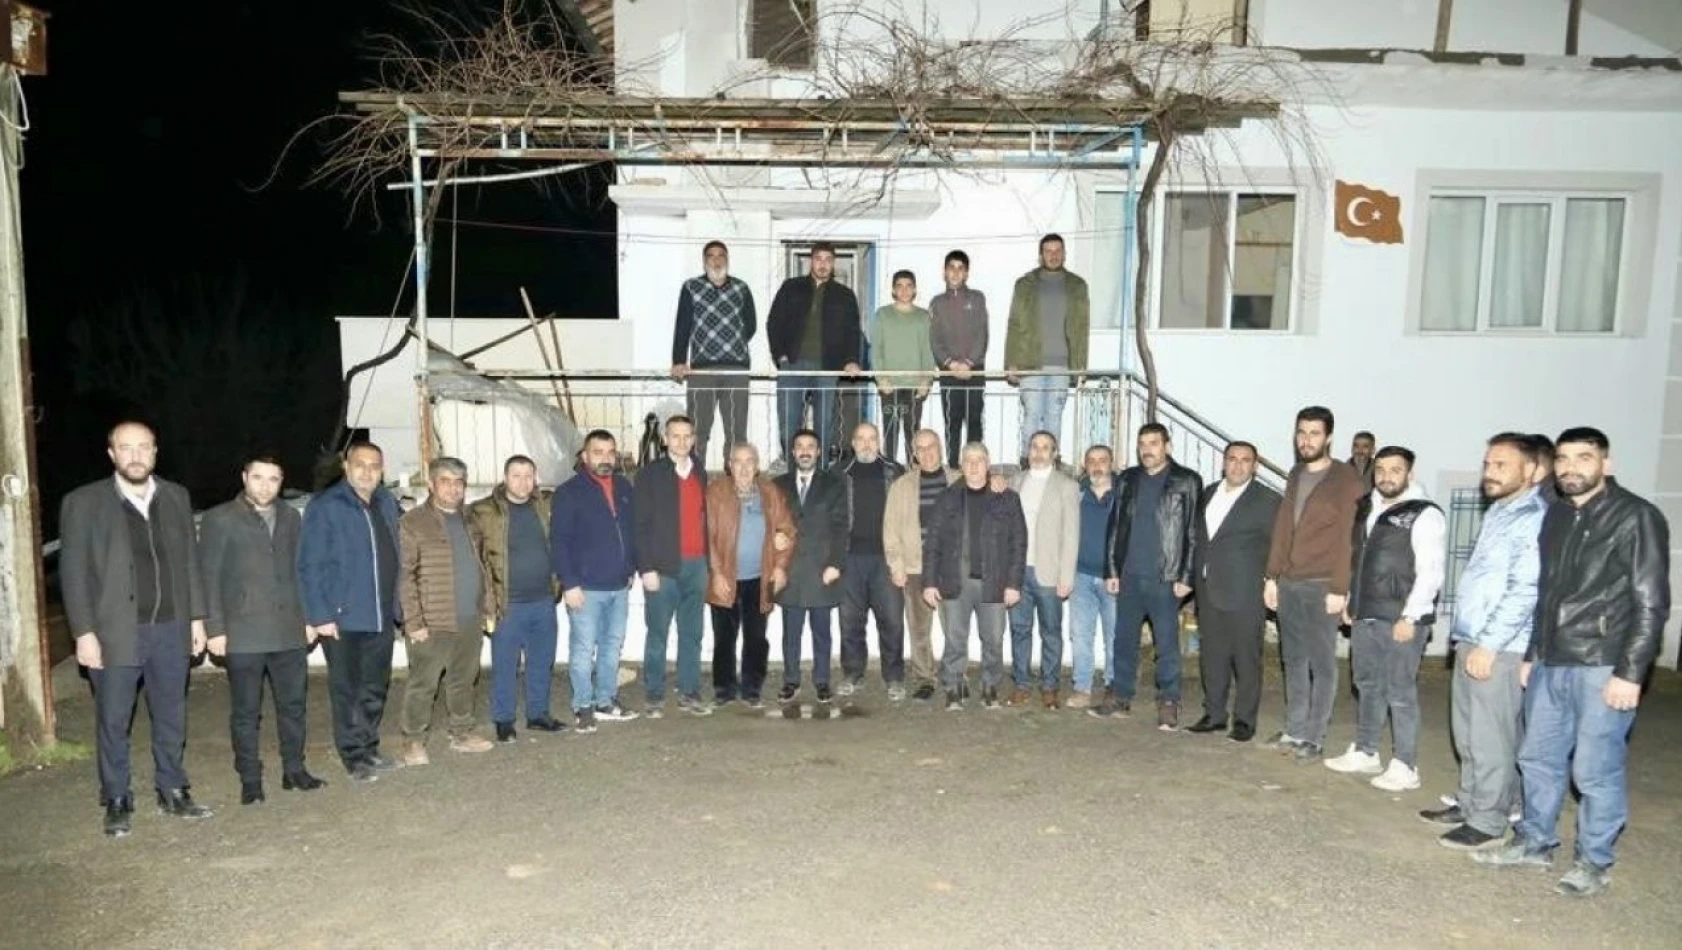 Malatya Büyükşehir adayı Bilal Yıldırım, seçim çalışmasına hız verdi